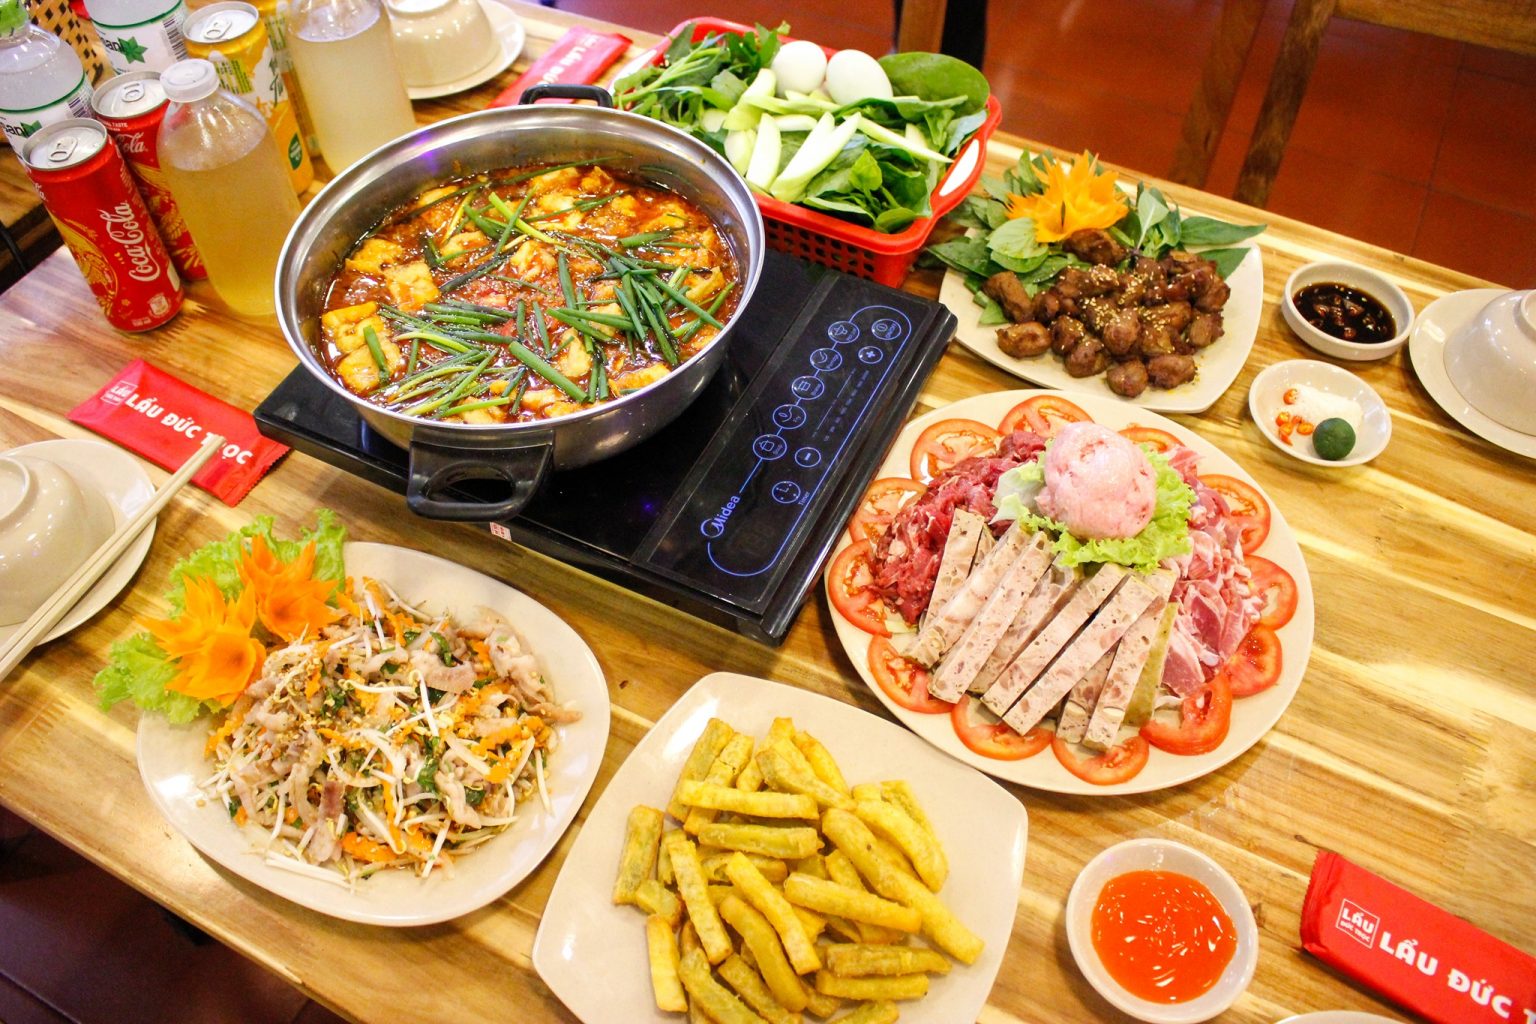 10 quán lẩu riêu cua bò ngon Hà Nội - Digifood